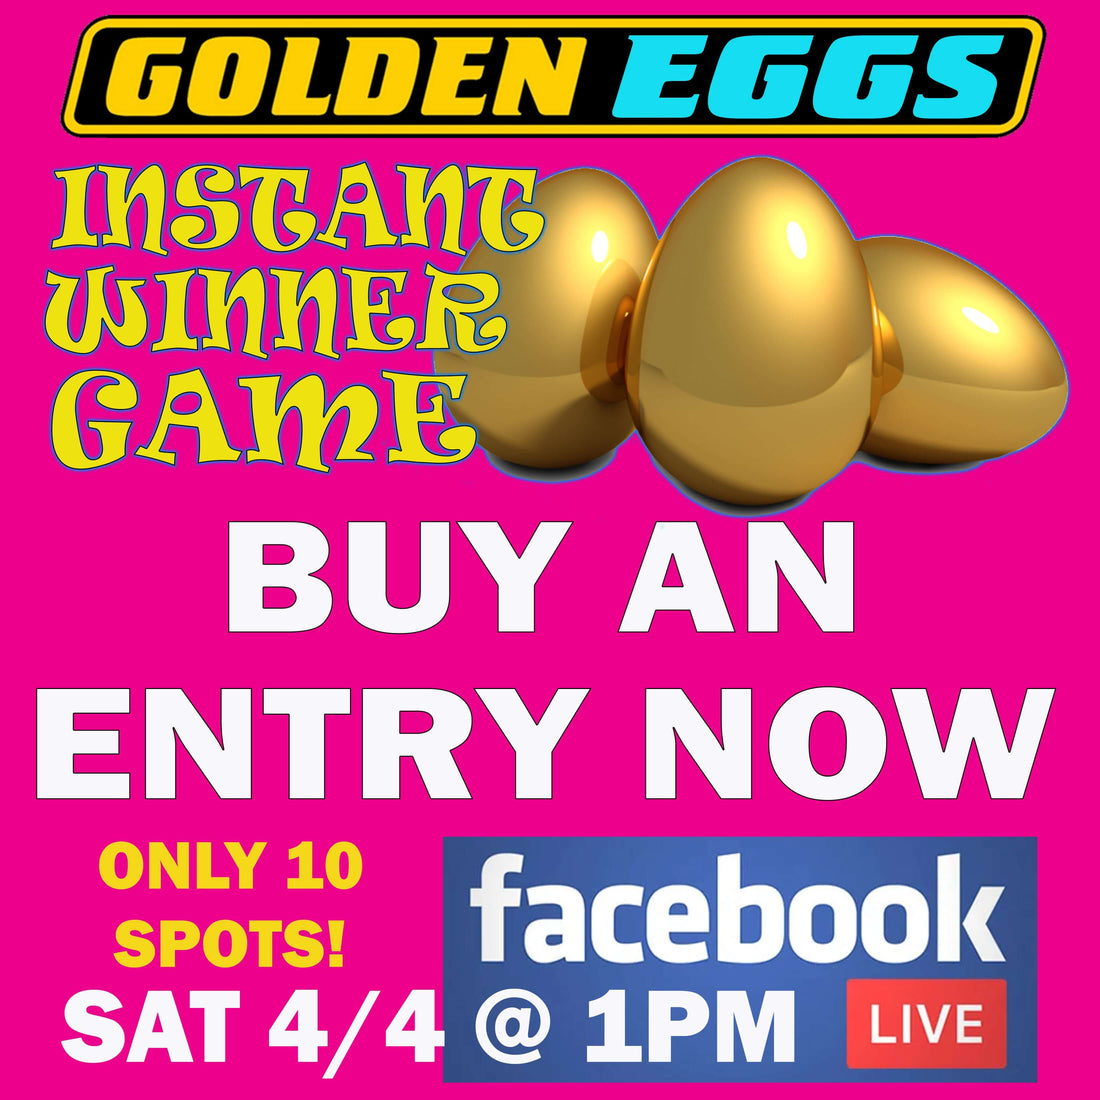 Golden Egg Instant Winner Game